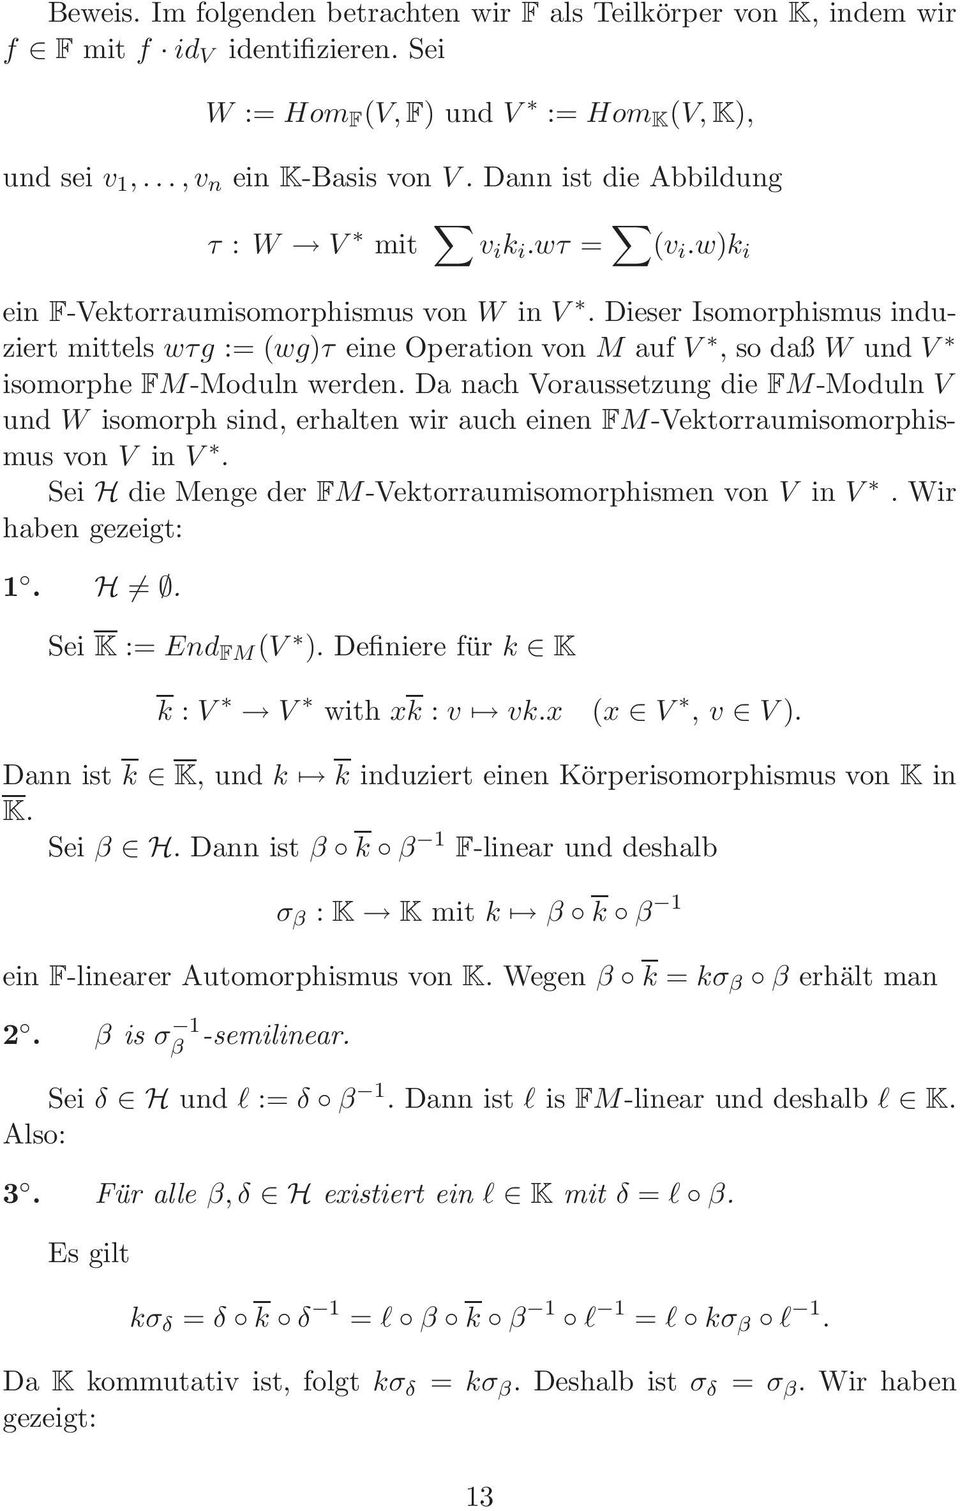 Dieser Isomorphismus induziert mittels wτg := (wg)τ eine Operation von M auf V, so daß W und V isomorphe FM-Moduln werden.